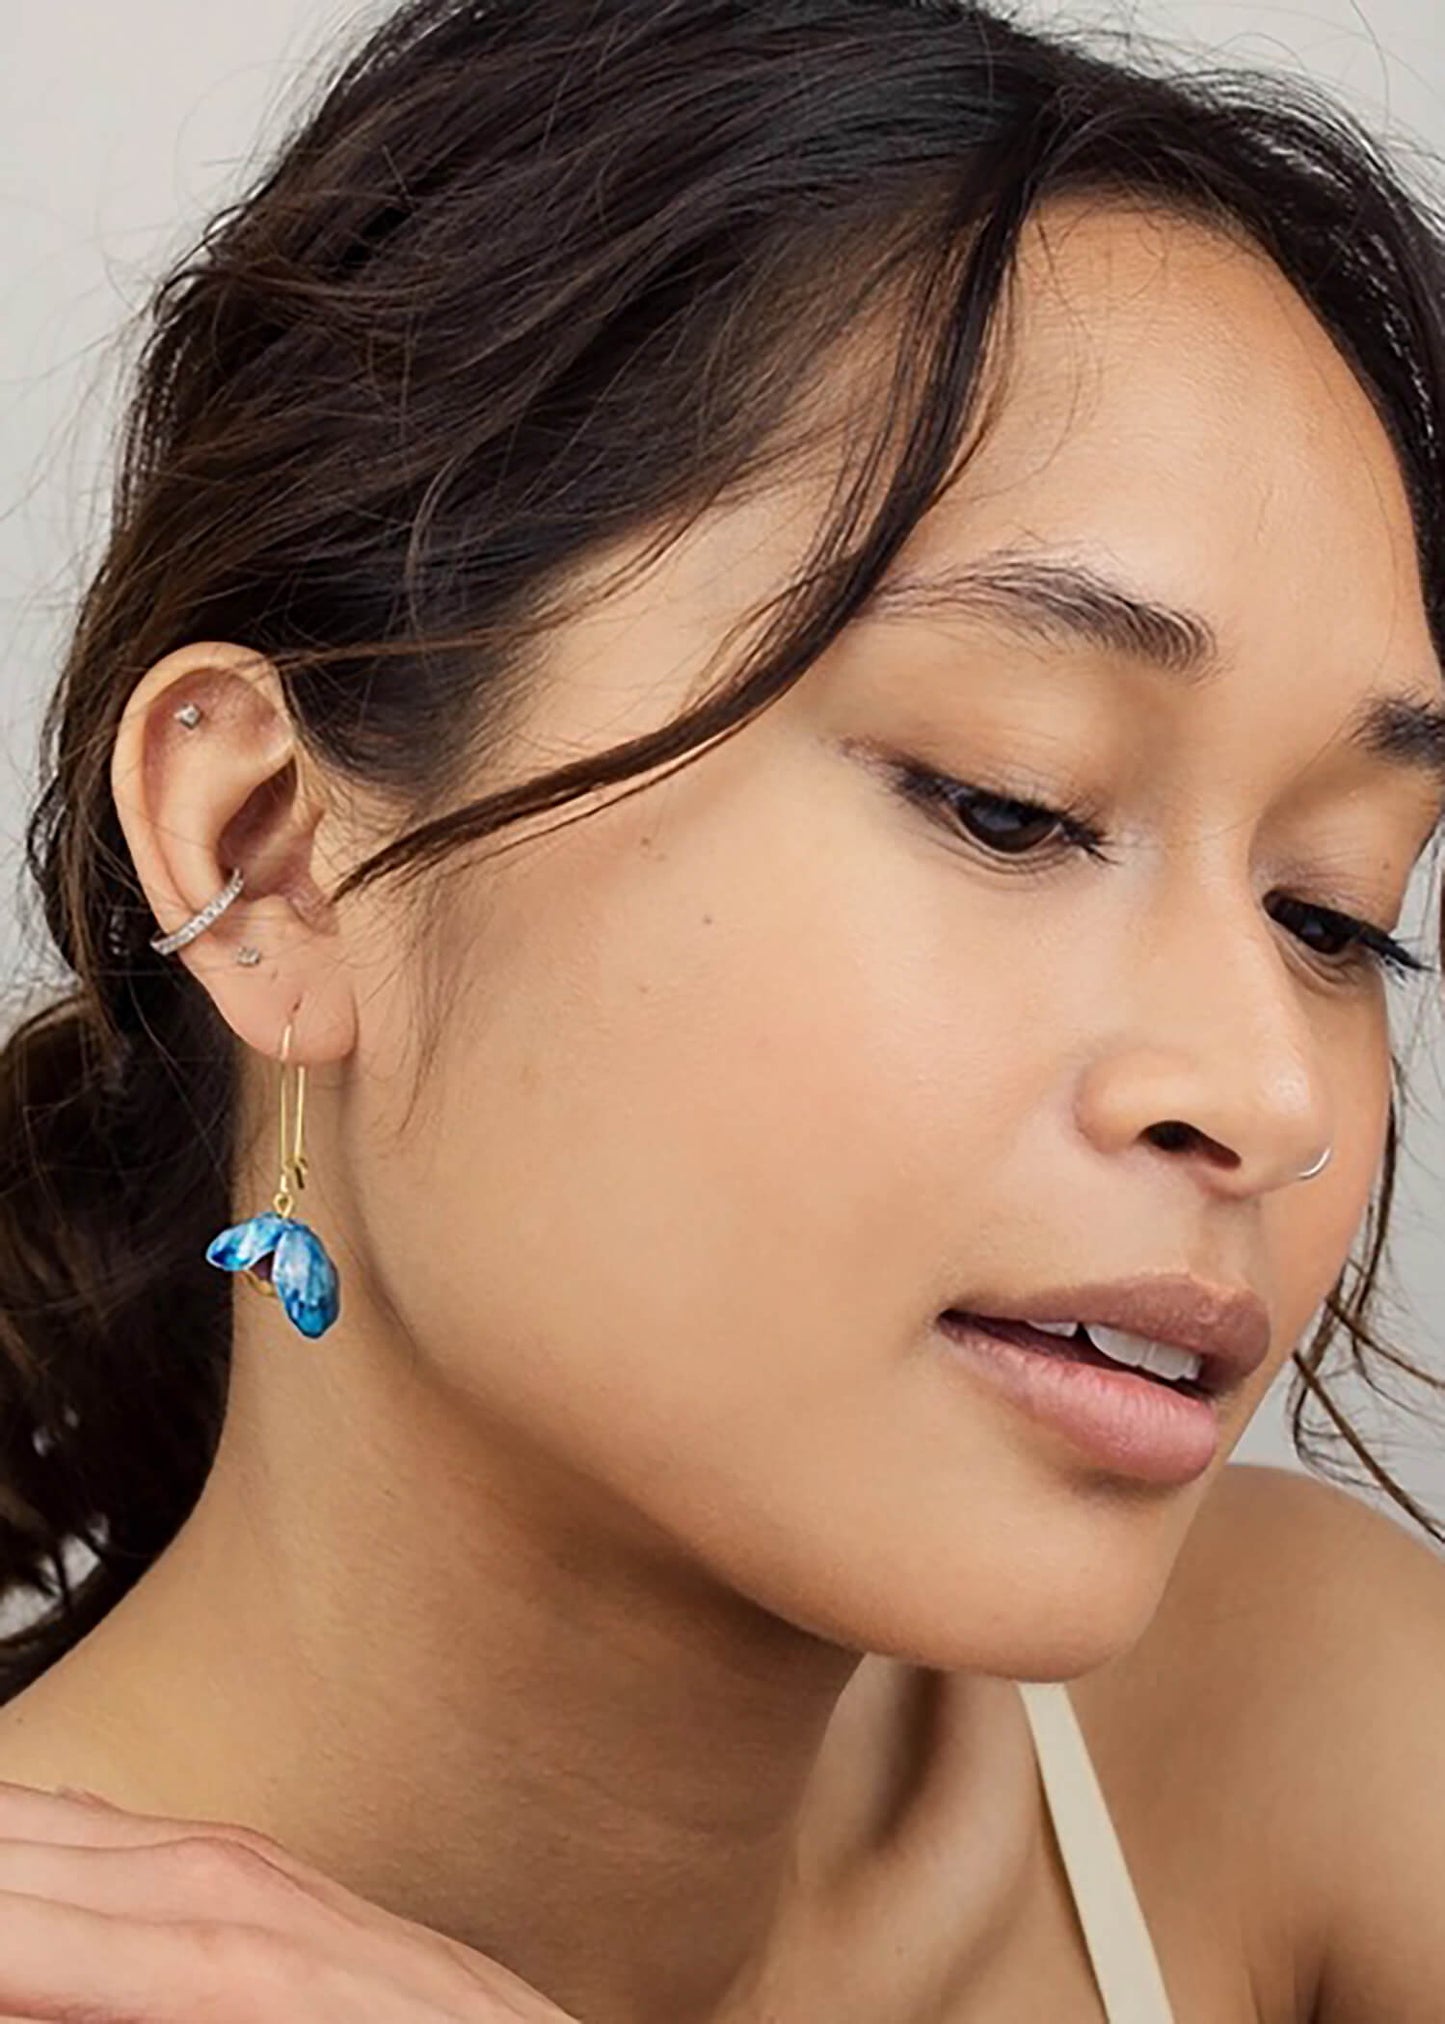 Lady wearing bluebell earrings